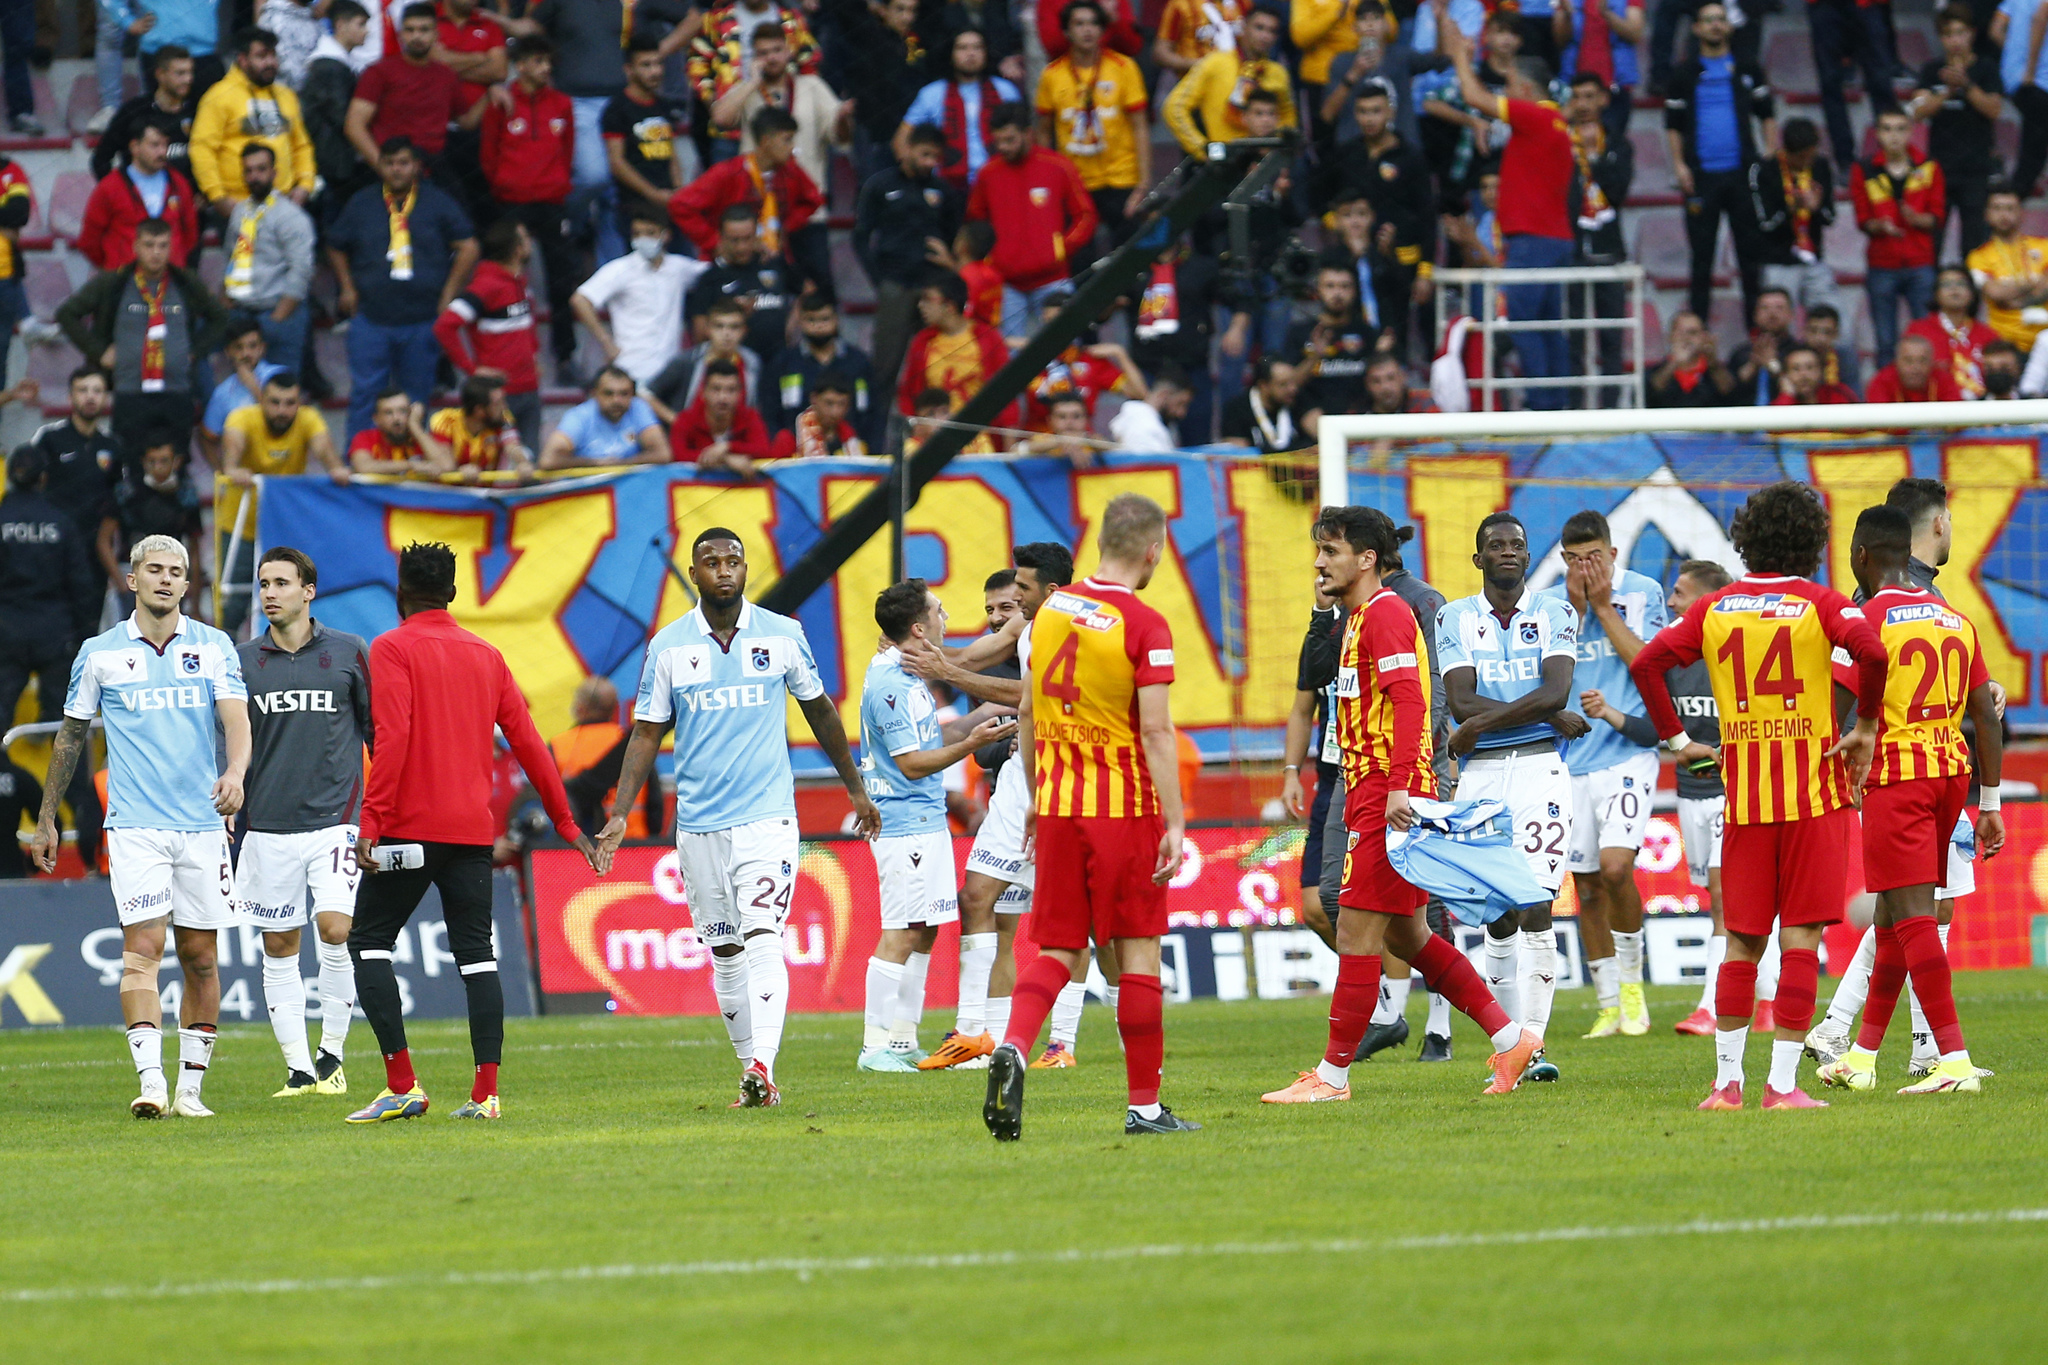 TRABZONSPOR HABERLERİ - Spor yazarları Kayserispor-Trabzonspor maçını değerlendirdi